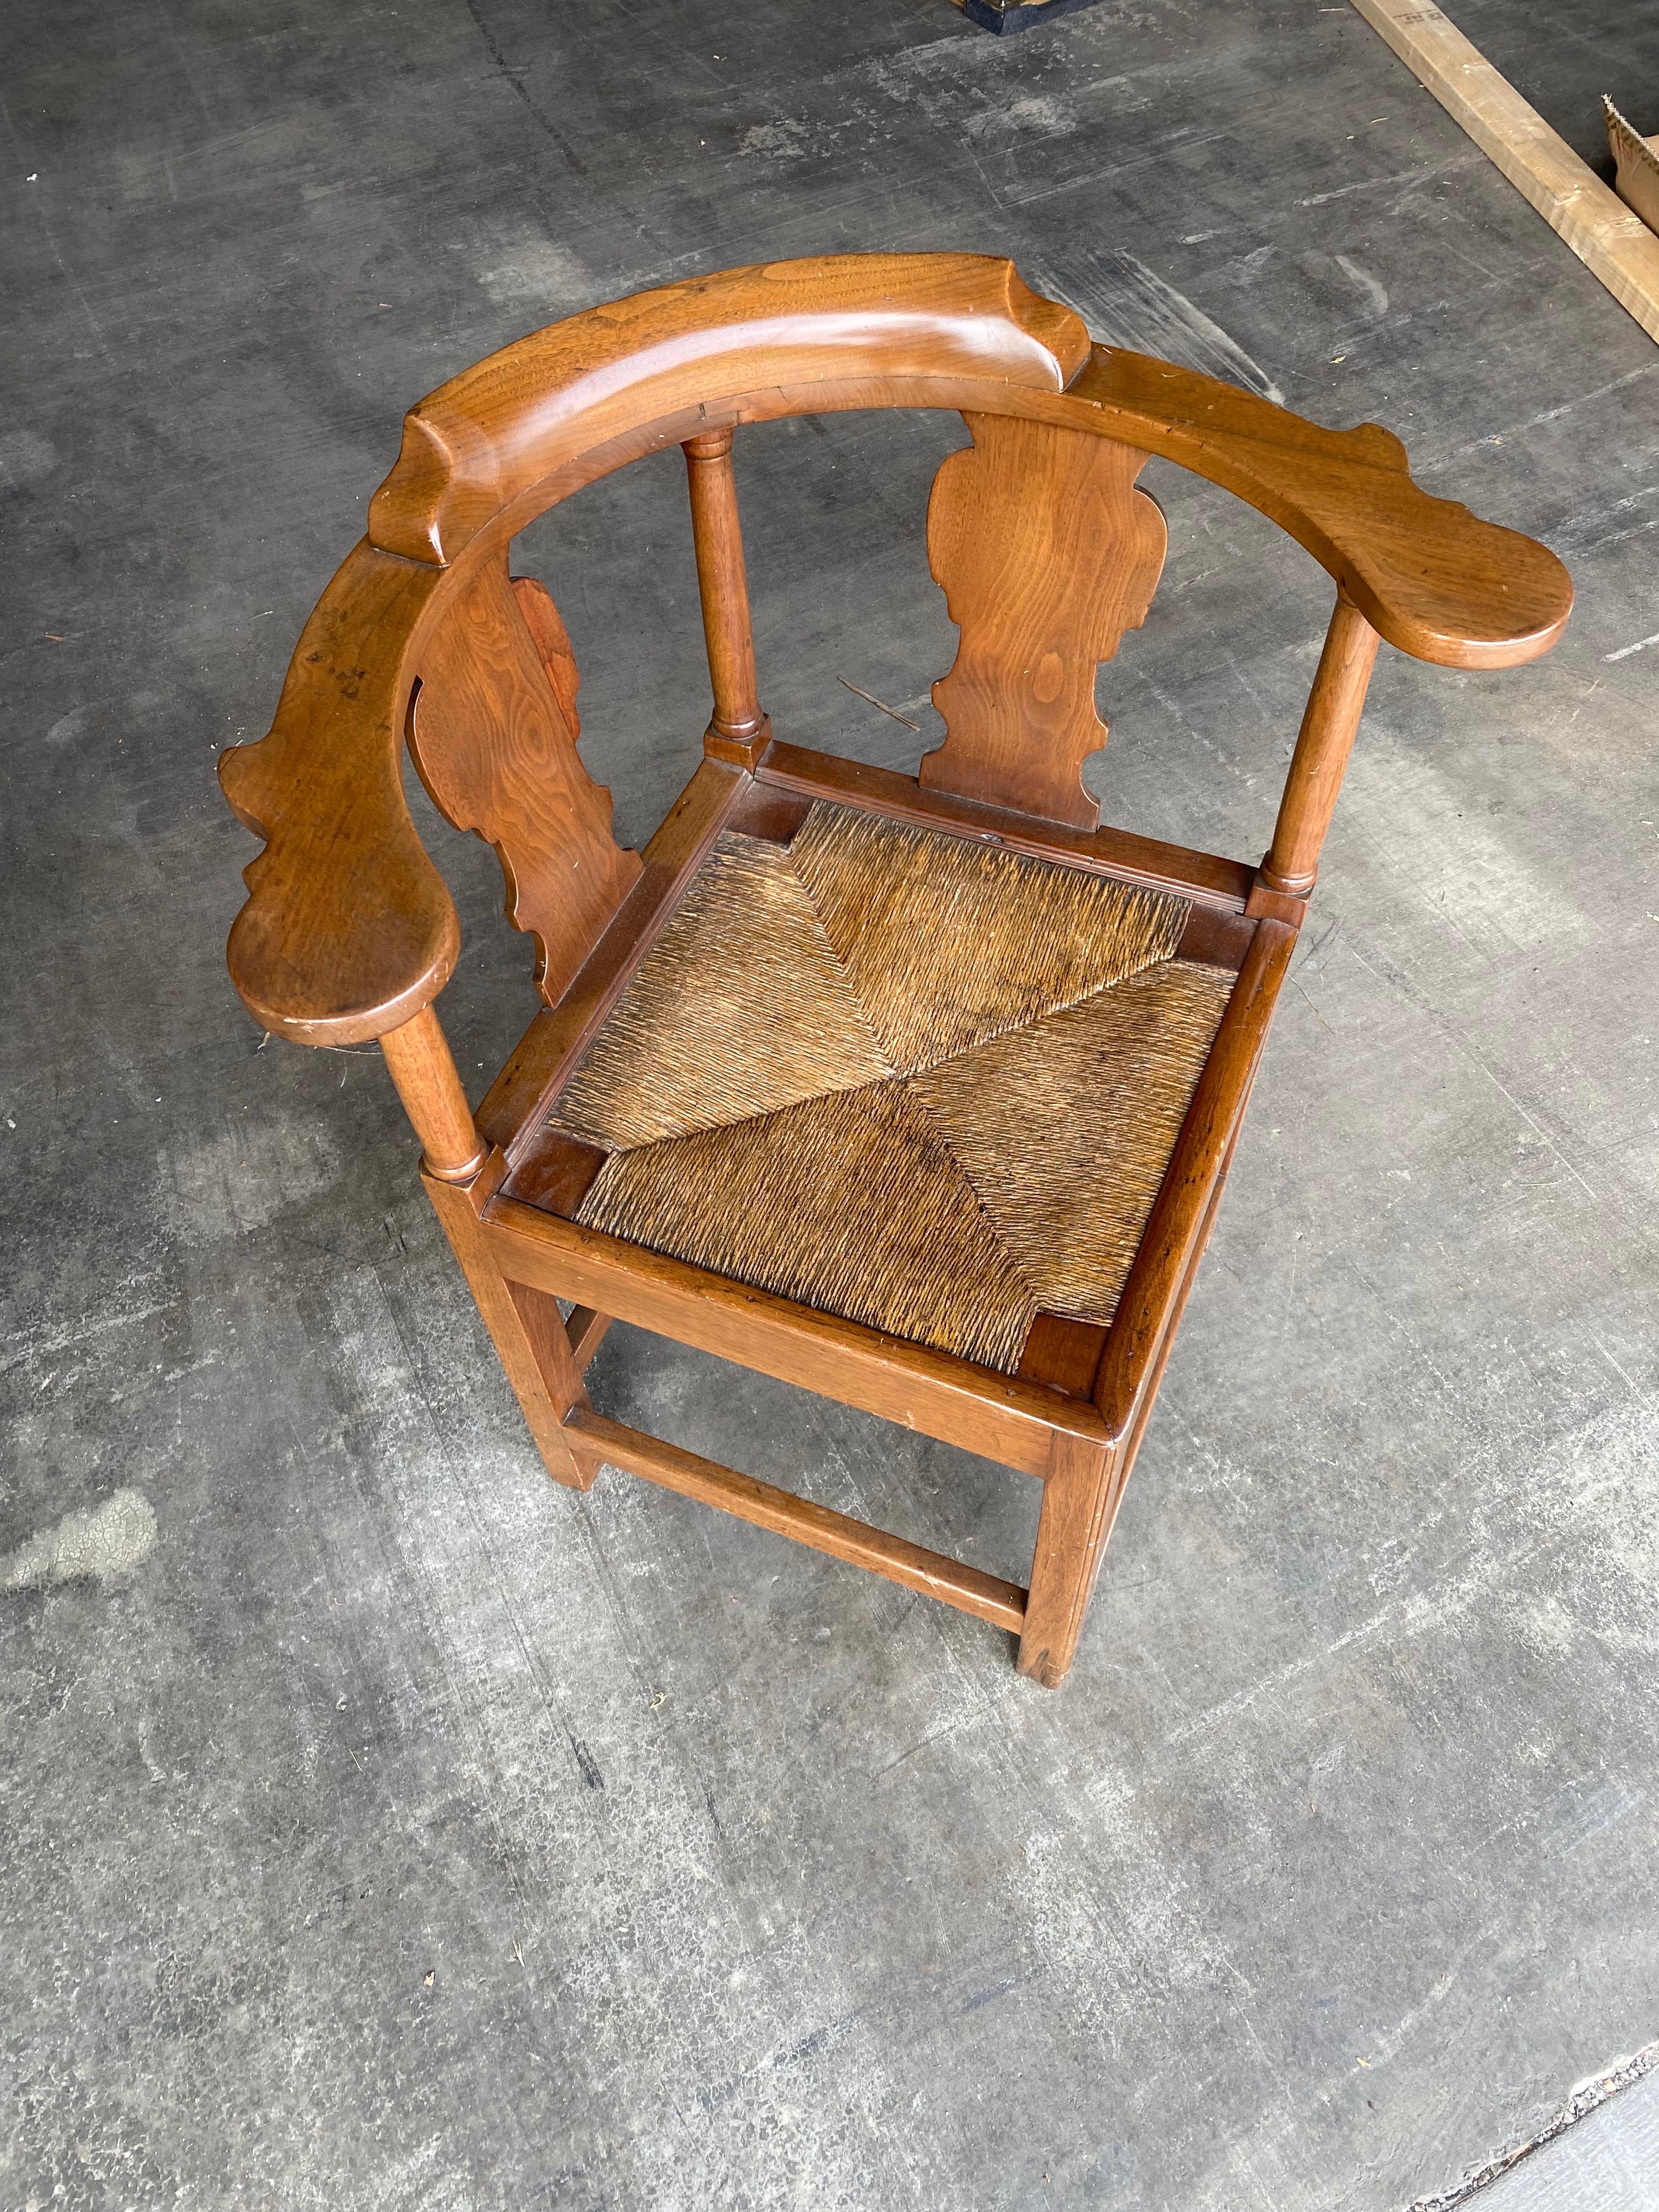 18th century British walnut corner chair with rush seat.